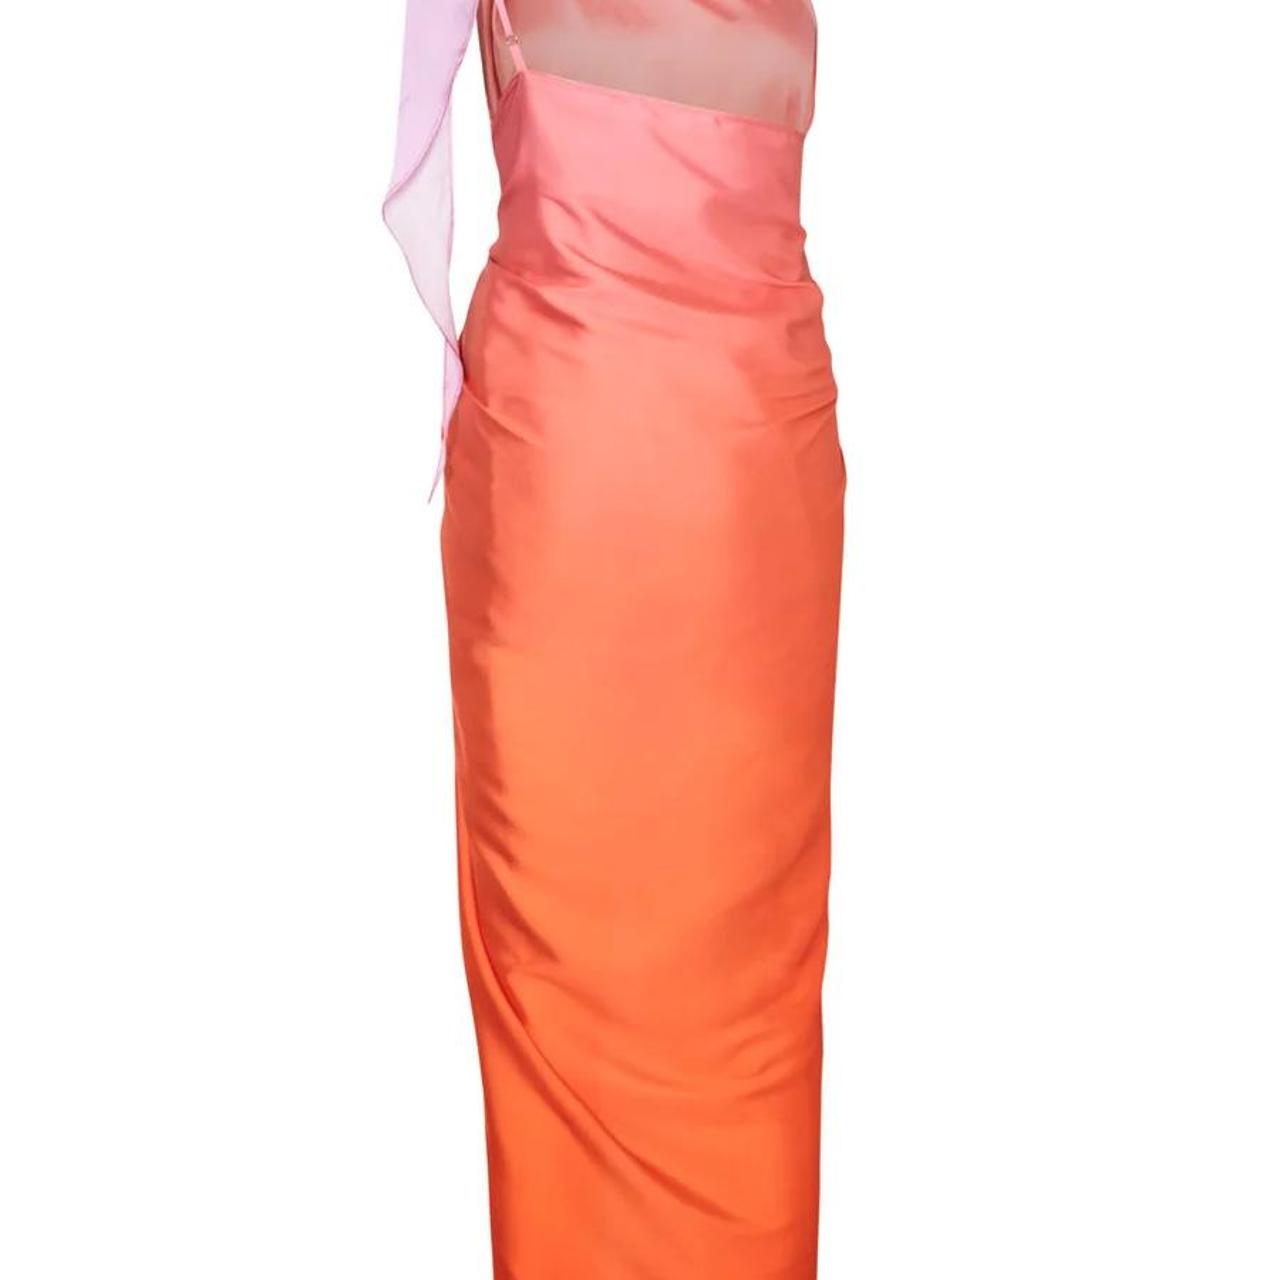 Baobab Women's Orange and Pink Dress (4)